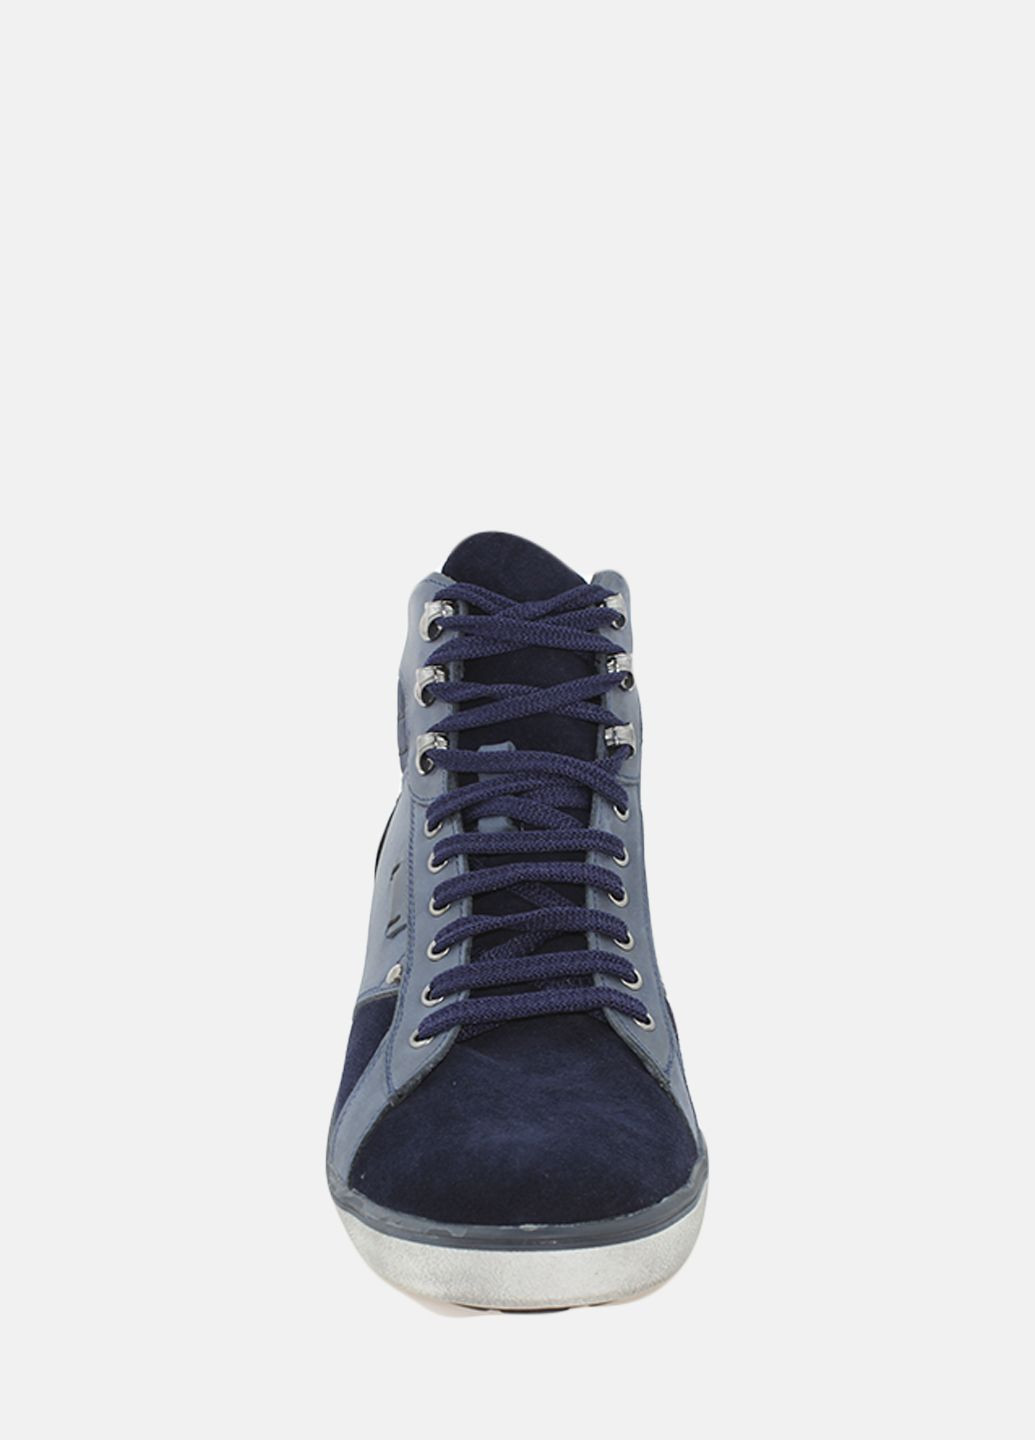 Синие осенние ботинки gw1633.04 синий Goover